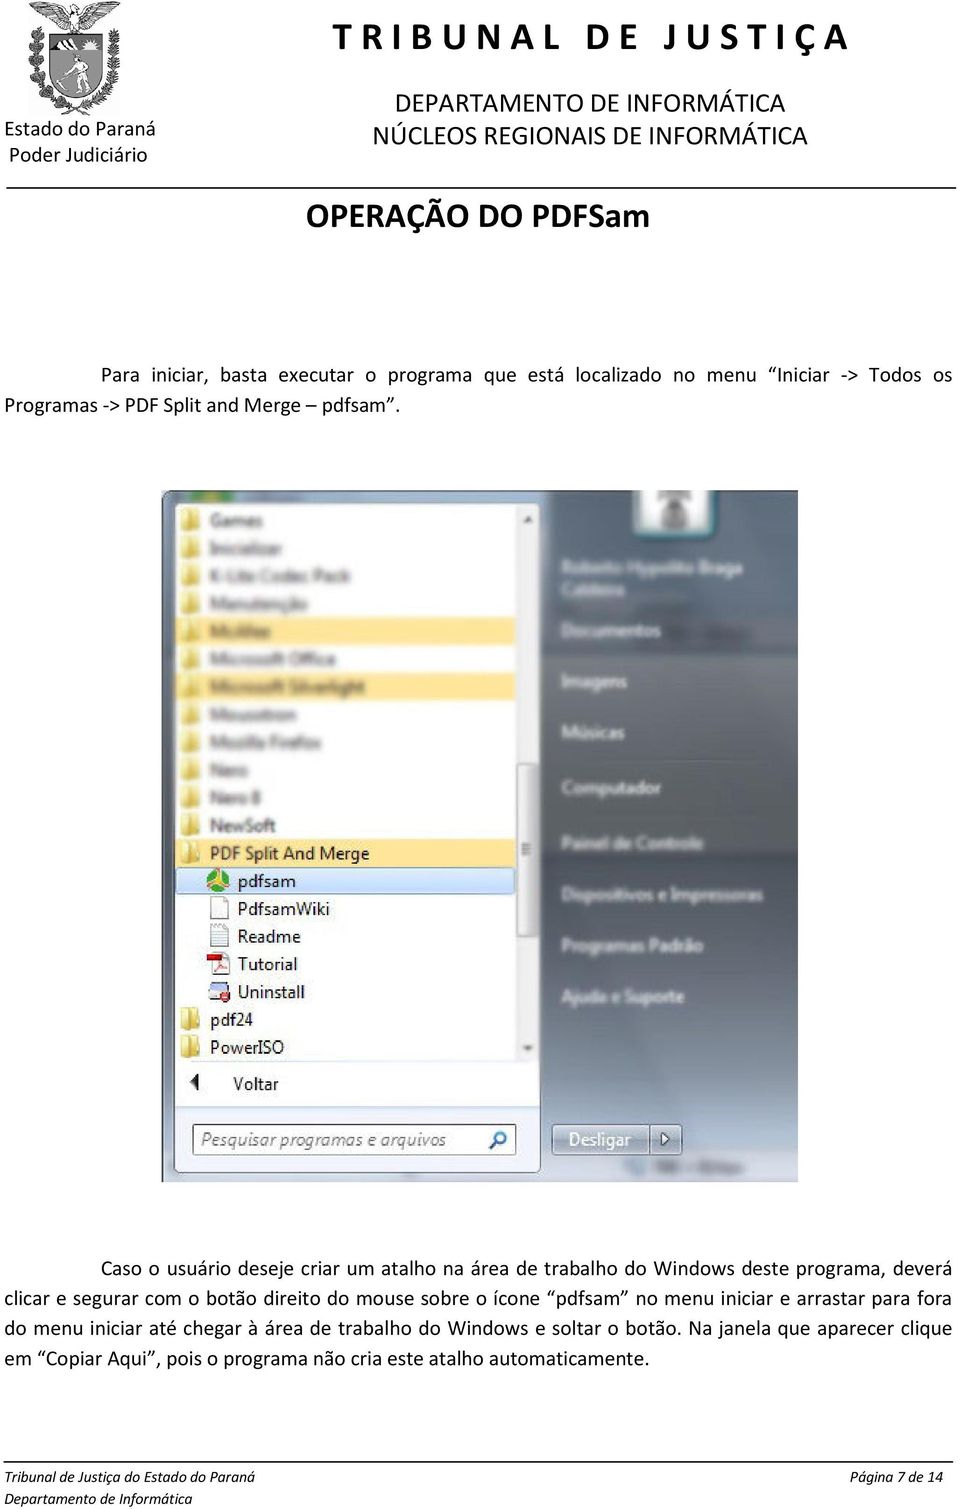 Caso o usuário deseje criar um atalho na área de trabalho do Windows deste programa, deverá clicar e segurar com o botão direito do mouse